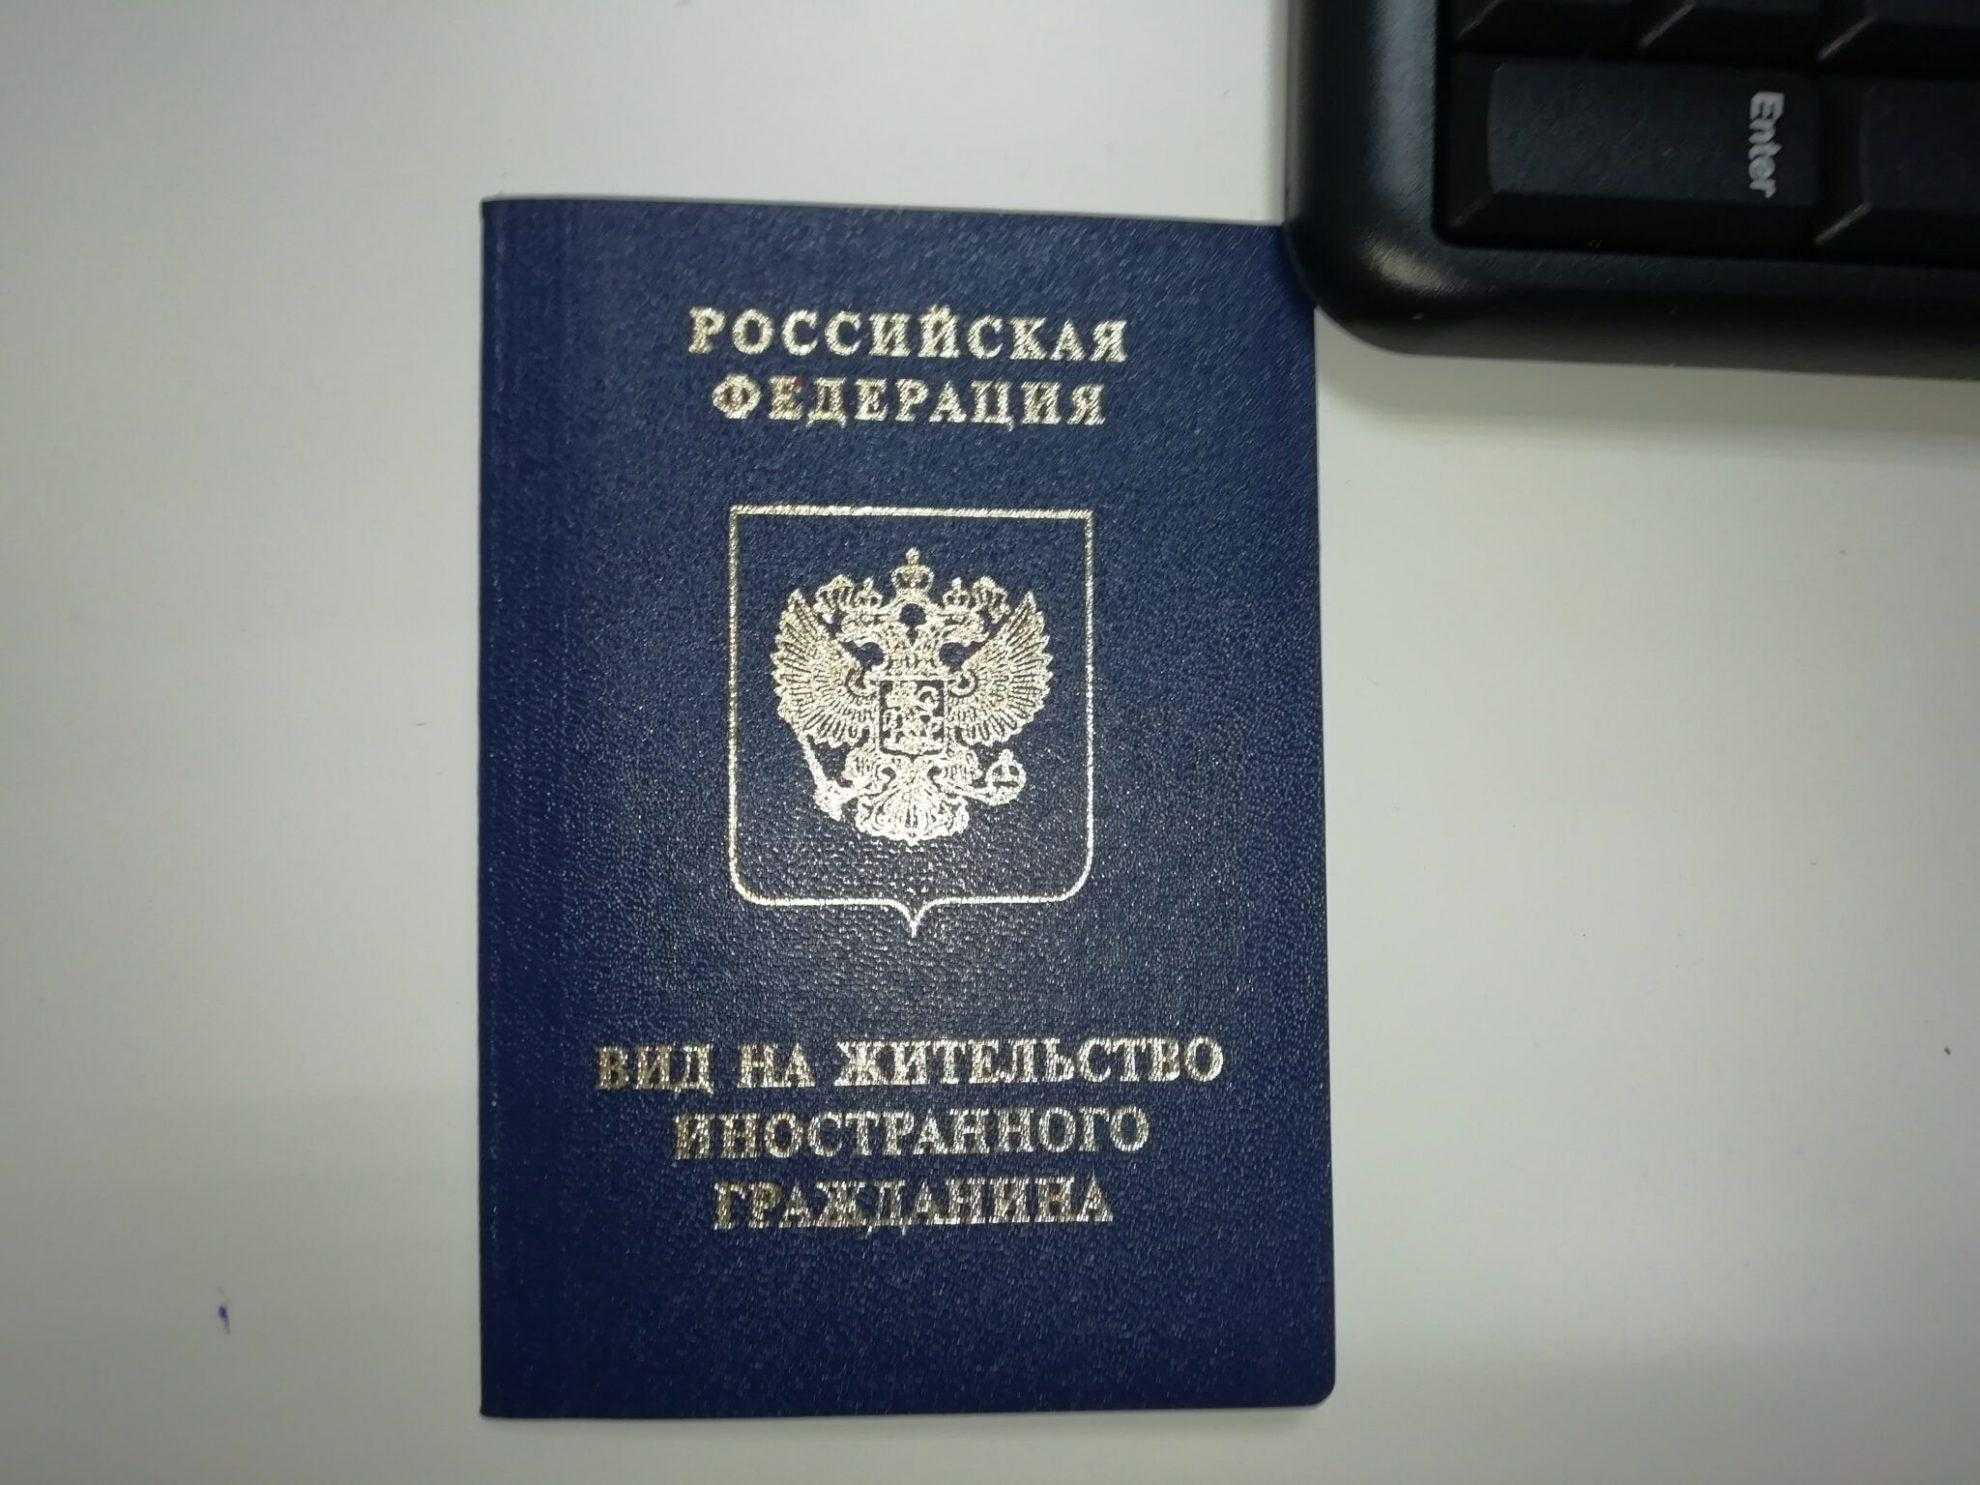 Чем отличается релокация от иммиграции? программа startup visa — внж — пмж — паспорт | rusbase